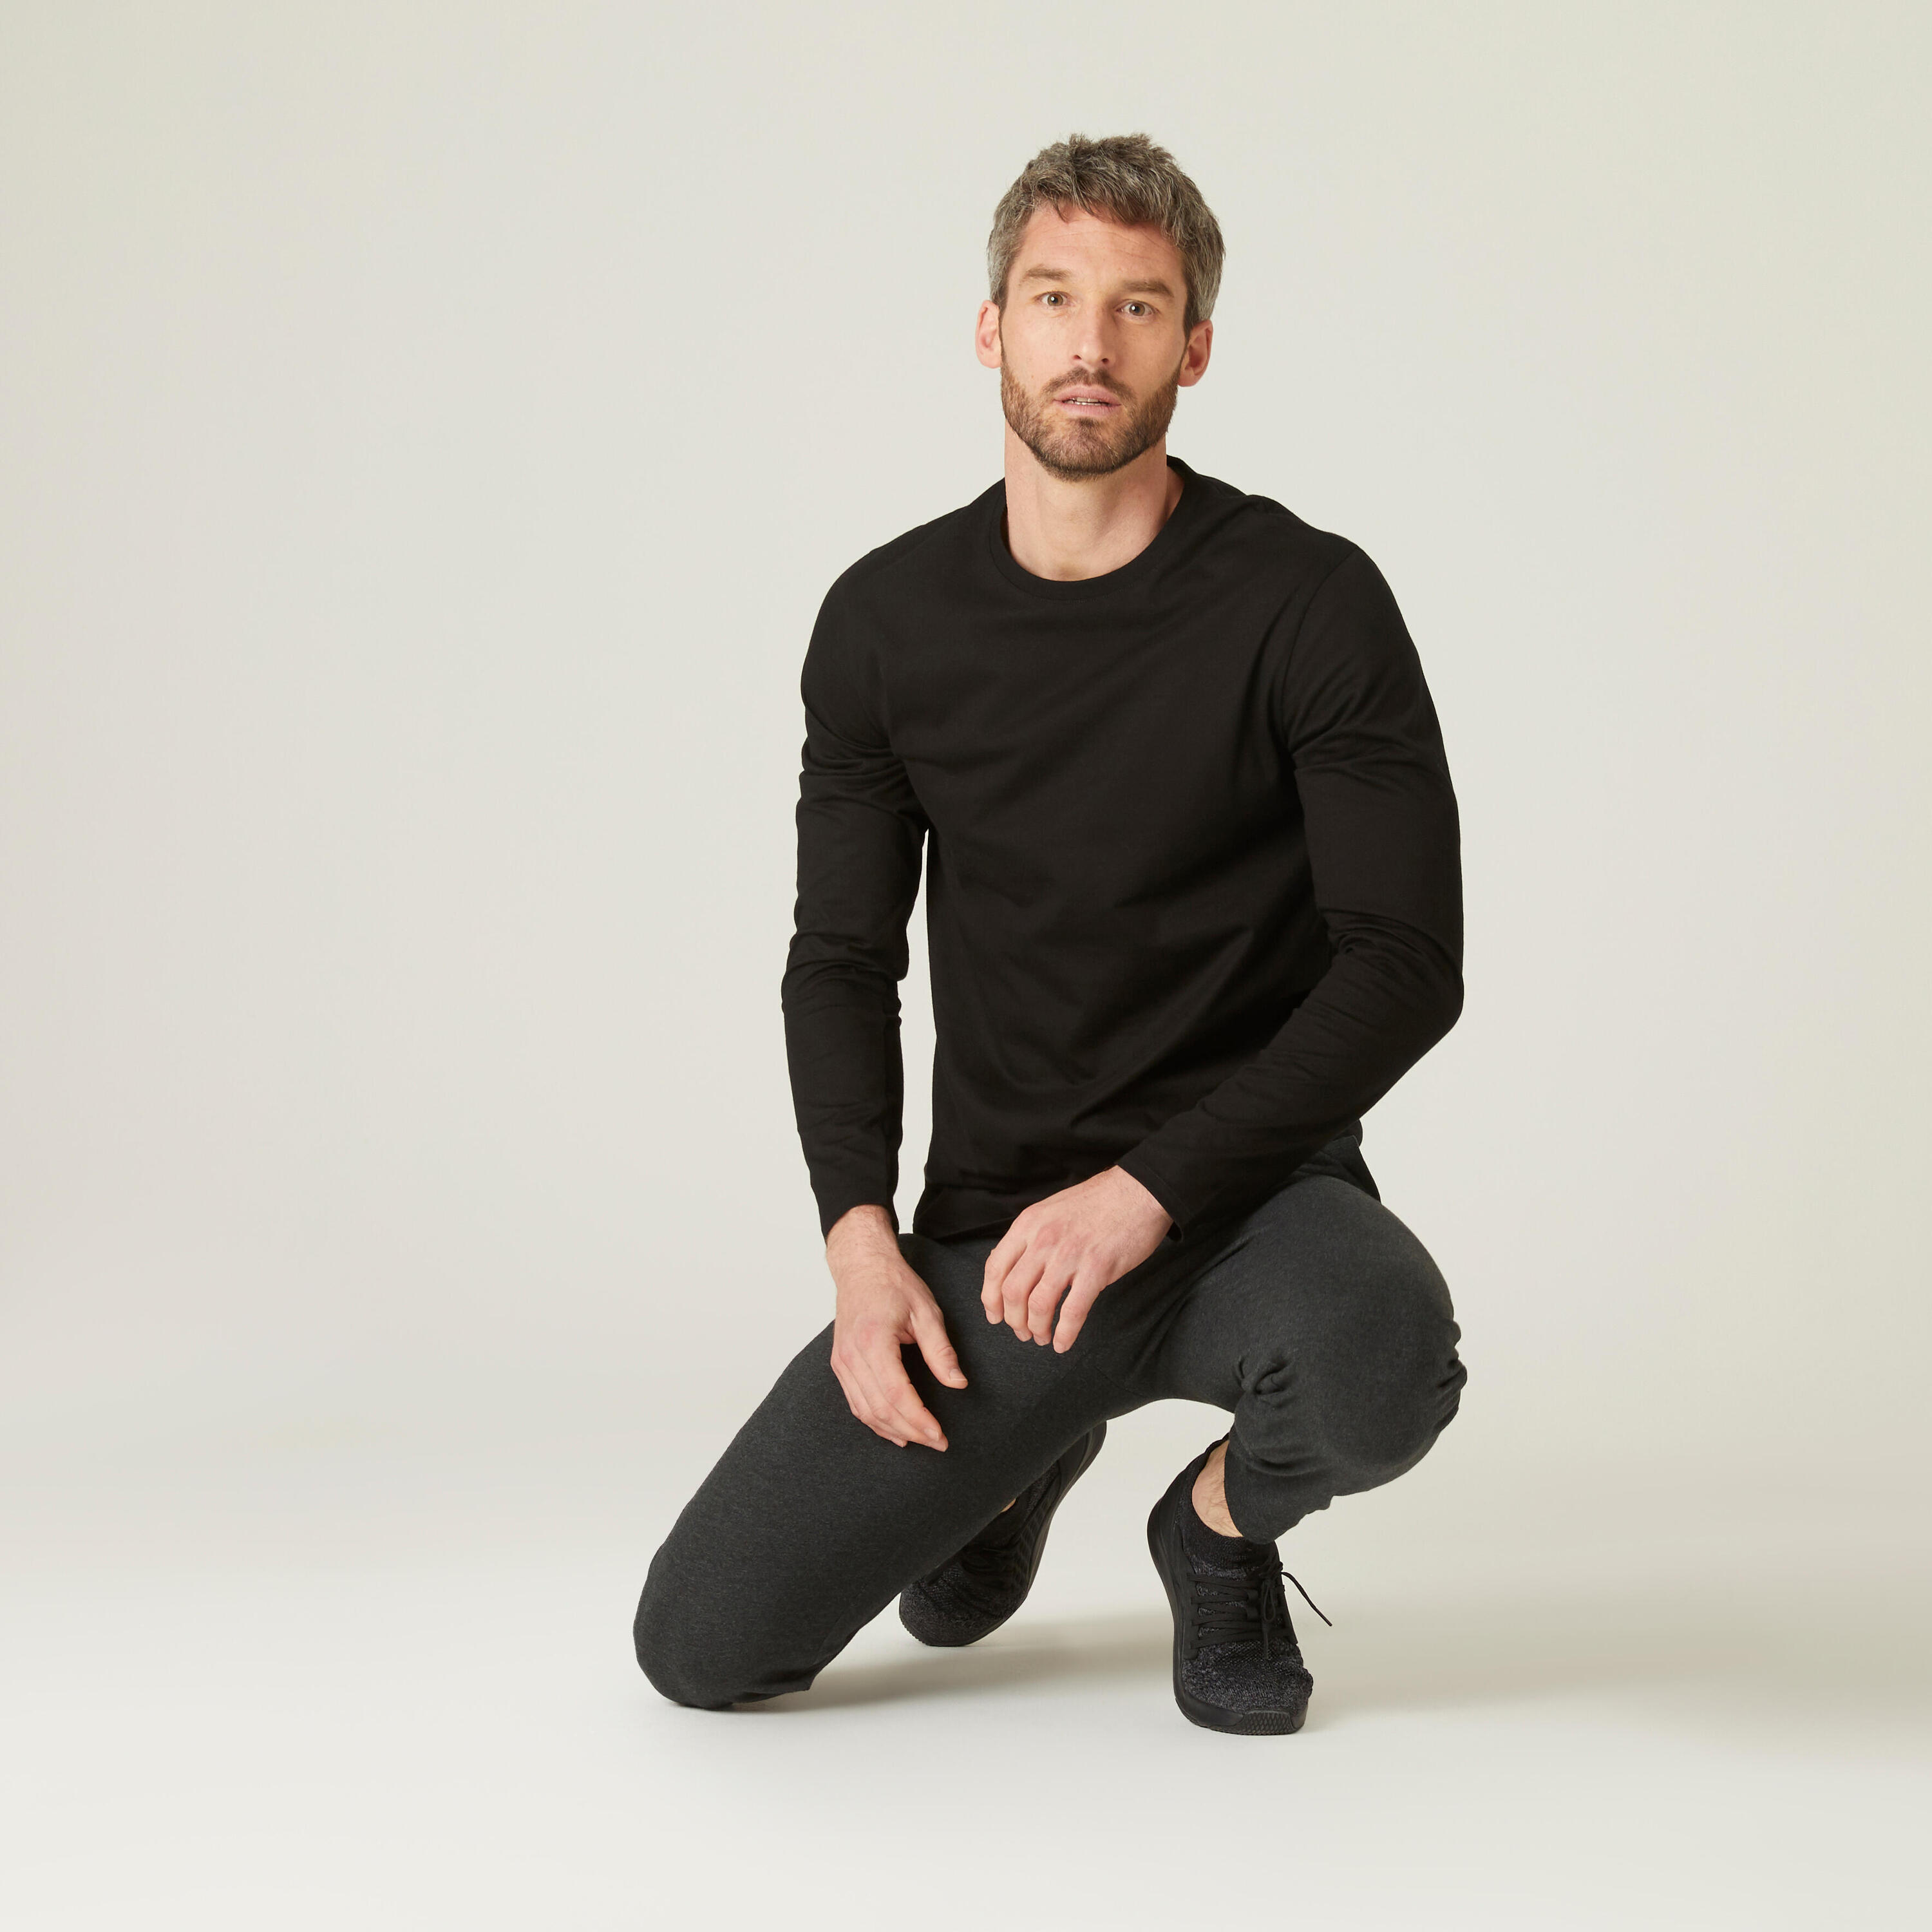 Men's Long-Sleeved Fitness T-Shirt 100 - Black 3/4